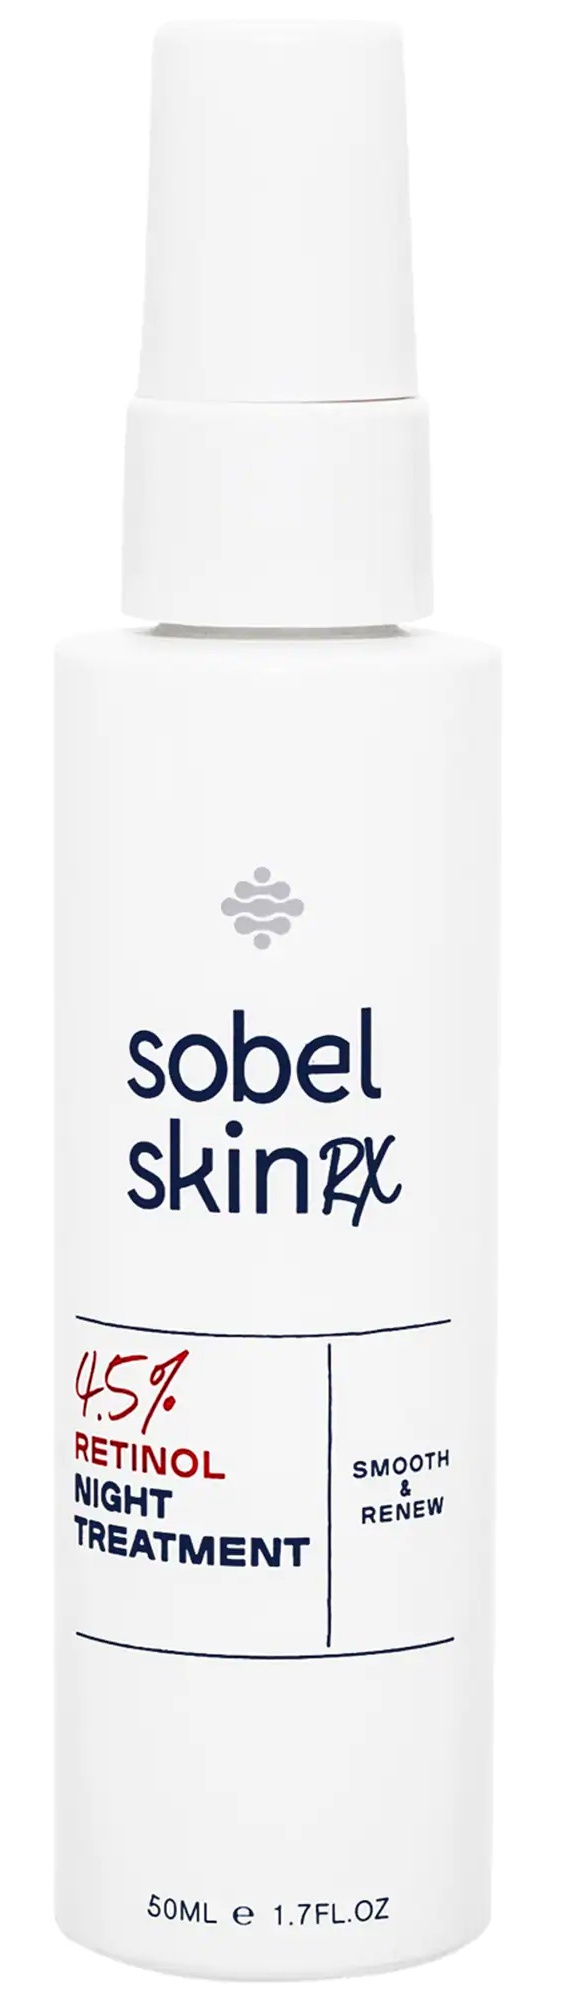 SOBEL SKIN Rx 4.5% Retinol Night Treatment